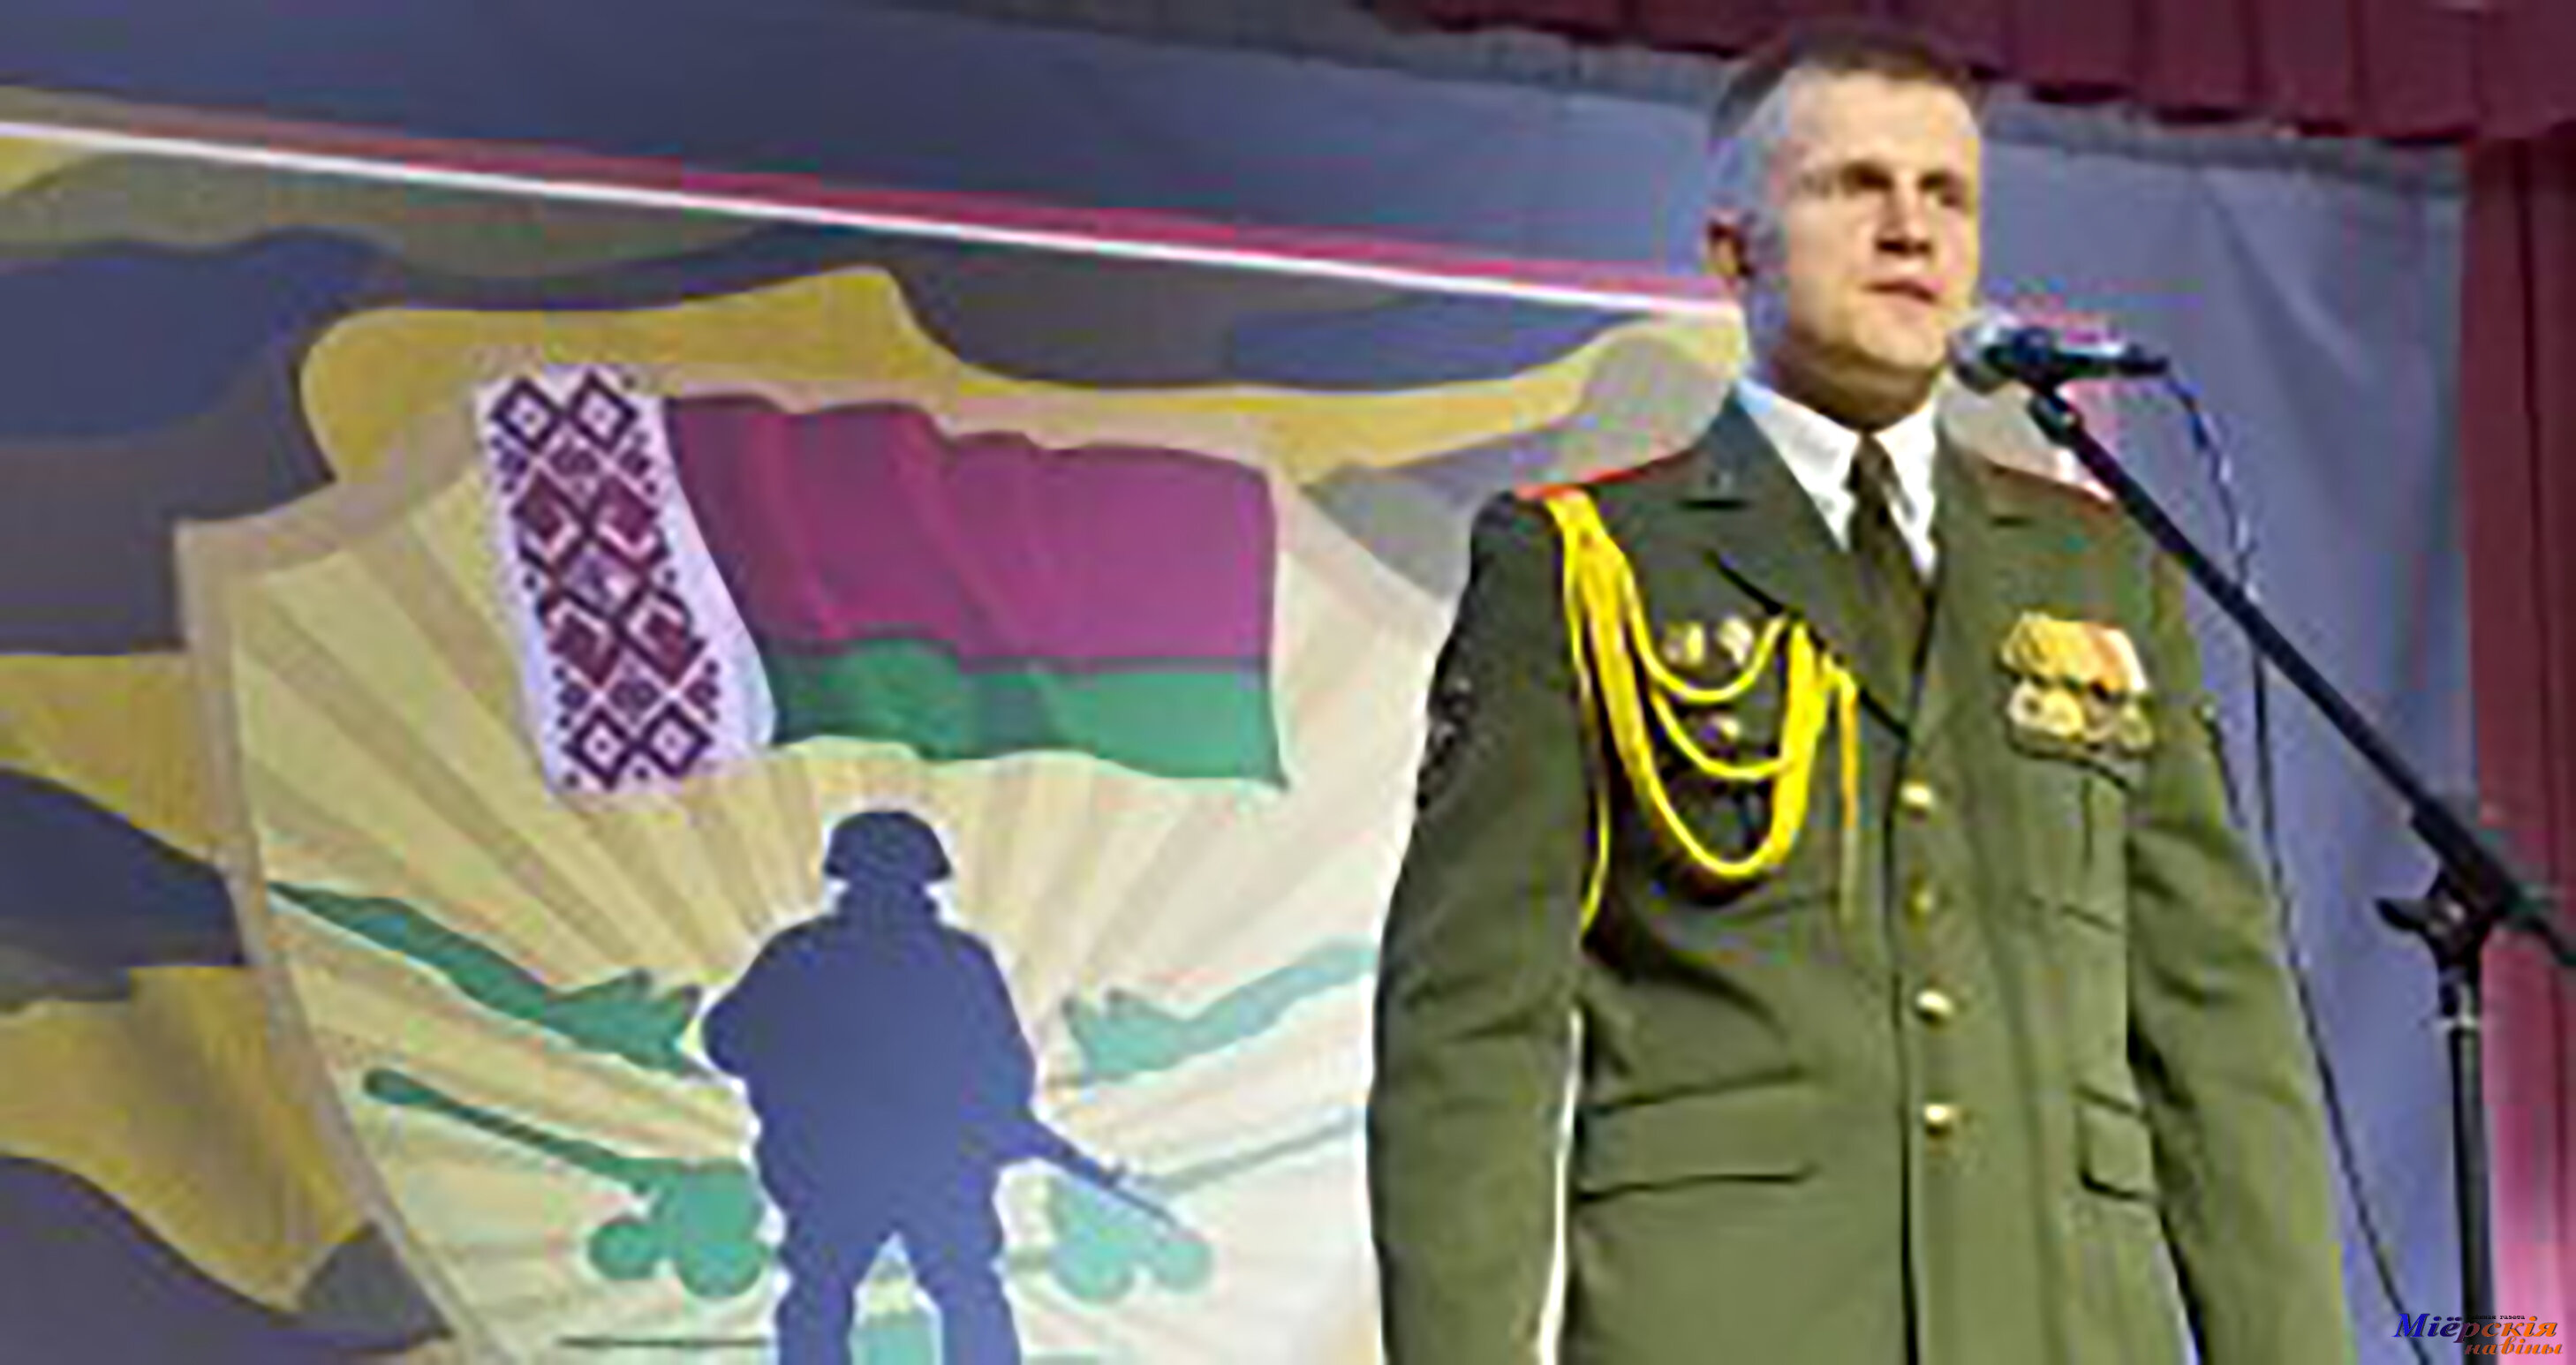 Мобилизации в Беларуси не предвидится, заявил военный комиссар Миорского района Сергей Пунтус